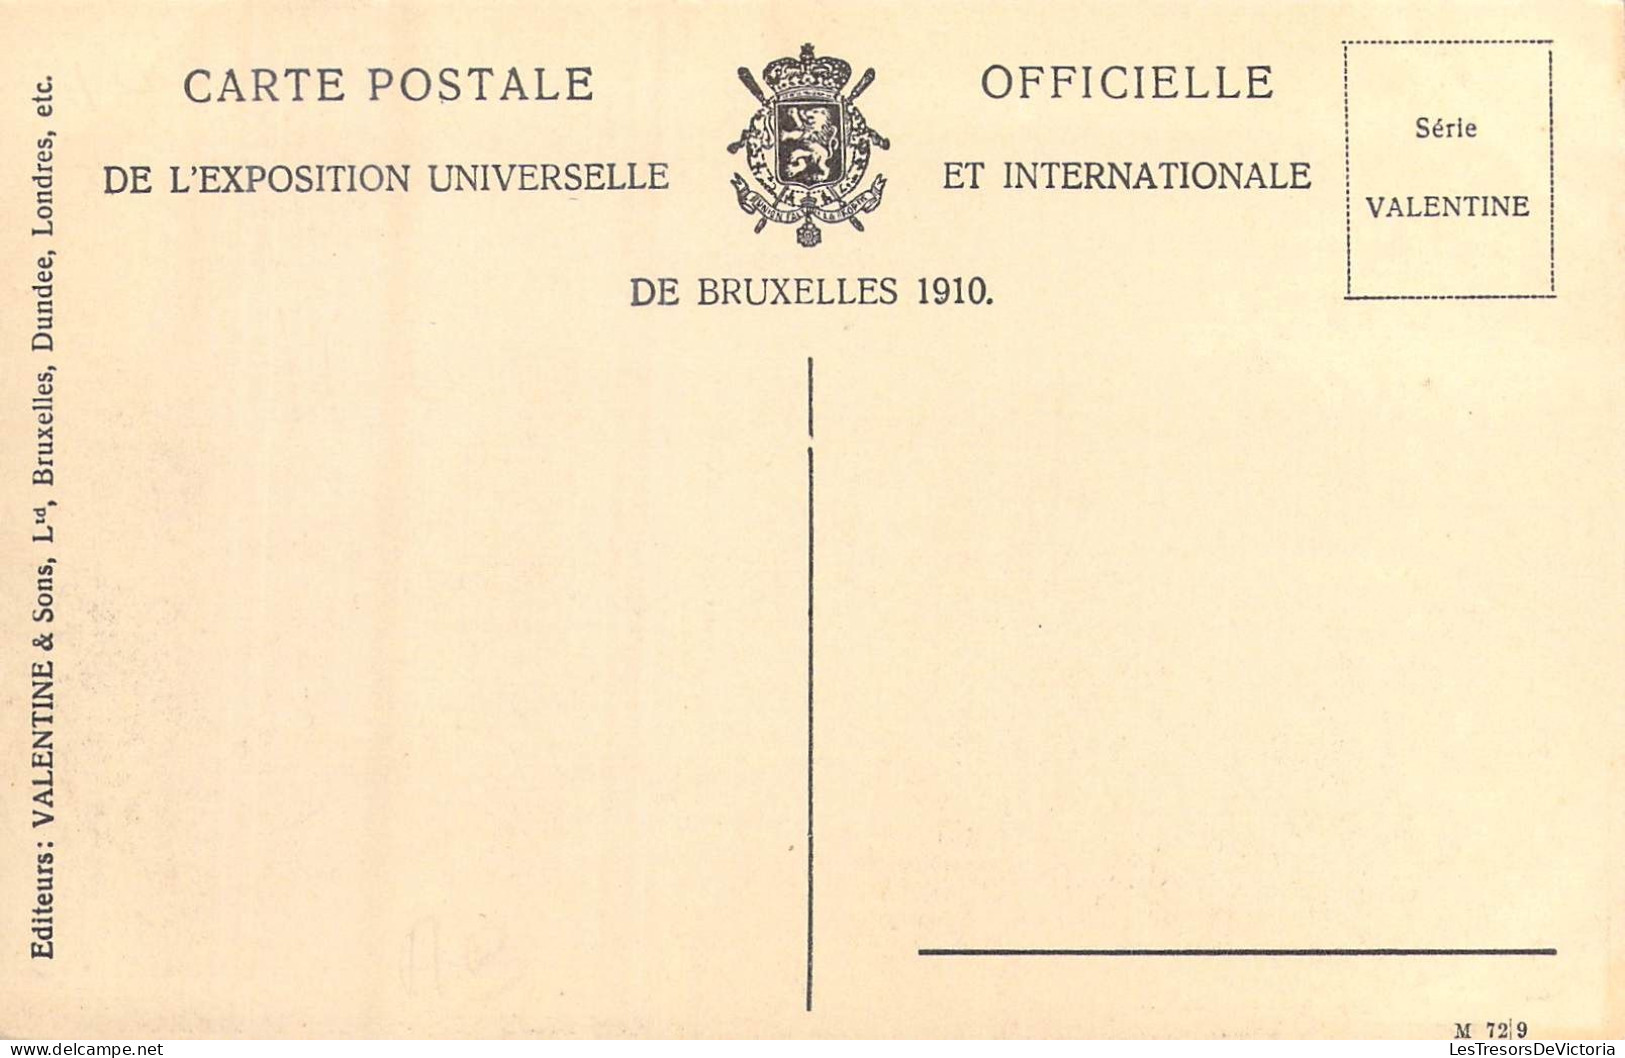 BELGIQUE - Bruxelles - Exposition De Bruxelles 1910 - Pavillon Du Brésil - Carte Postale Ancienne - Expositions Universelles